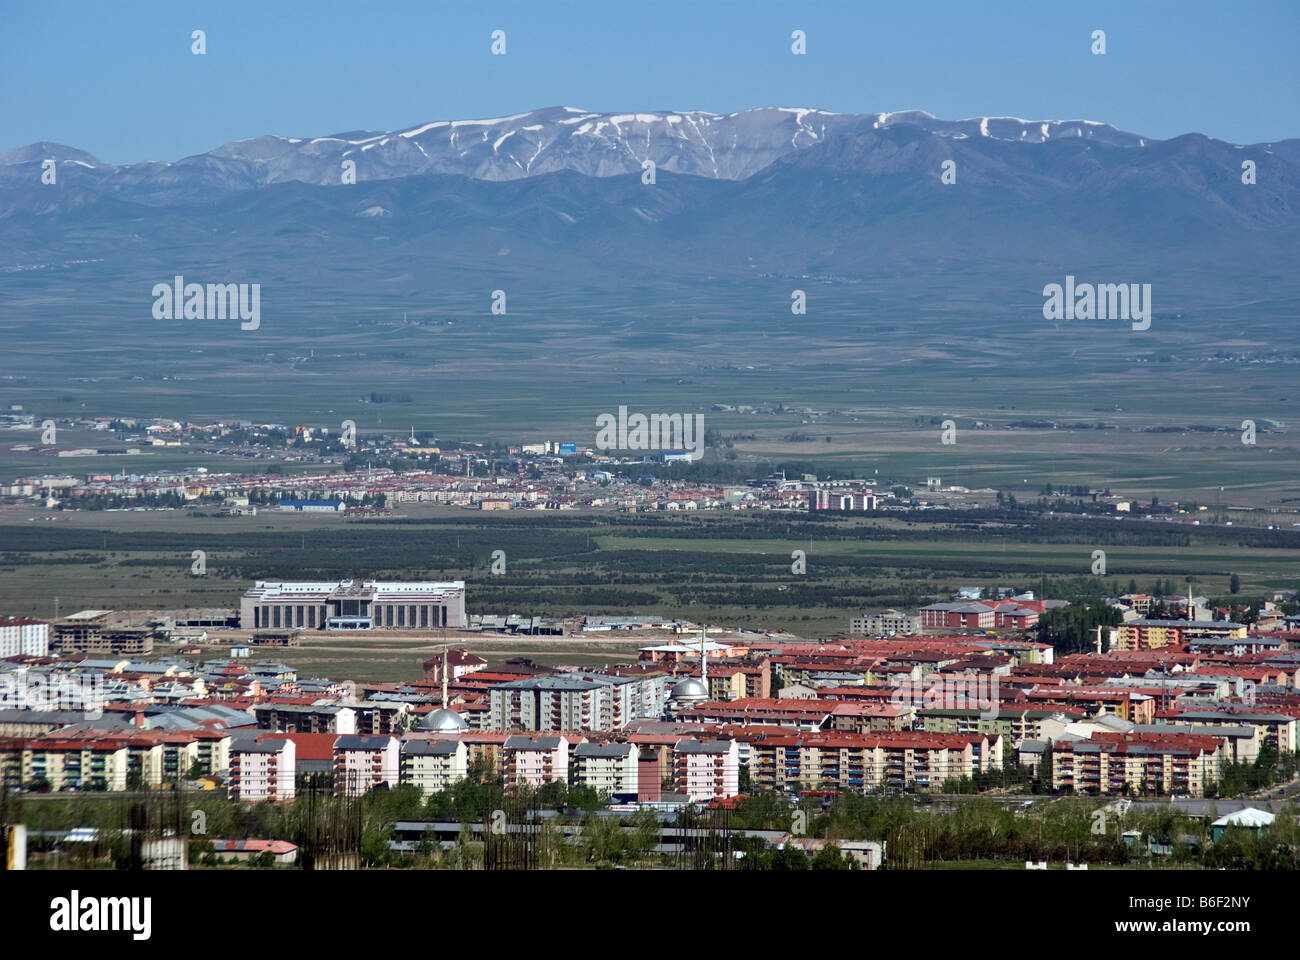 Erzurum, capitale provinciale sur un haut plateau entouré de montagnes dans l'Est de la Turquie Banque D'Images